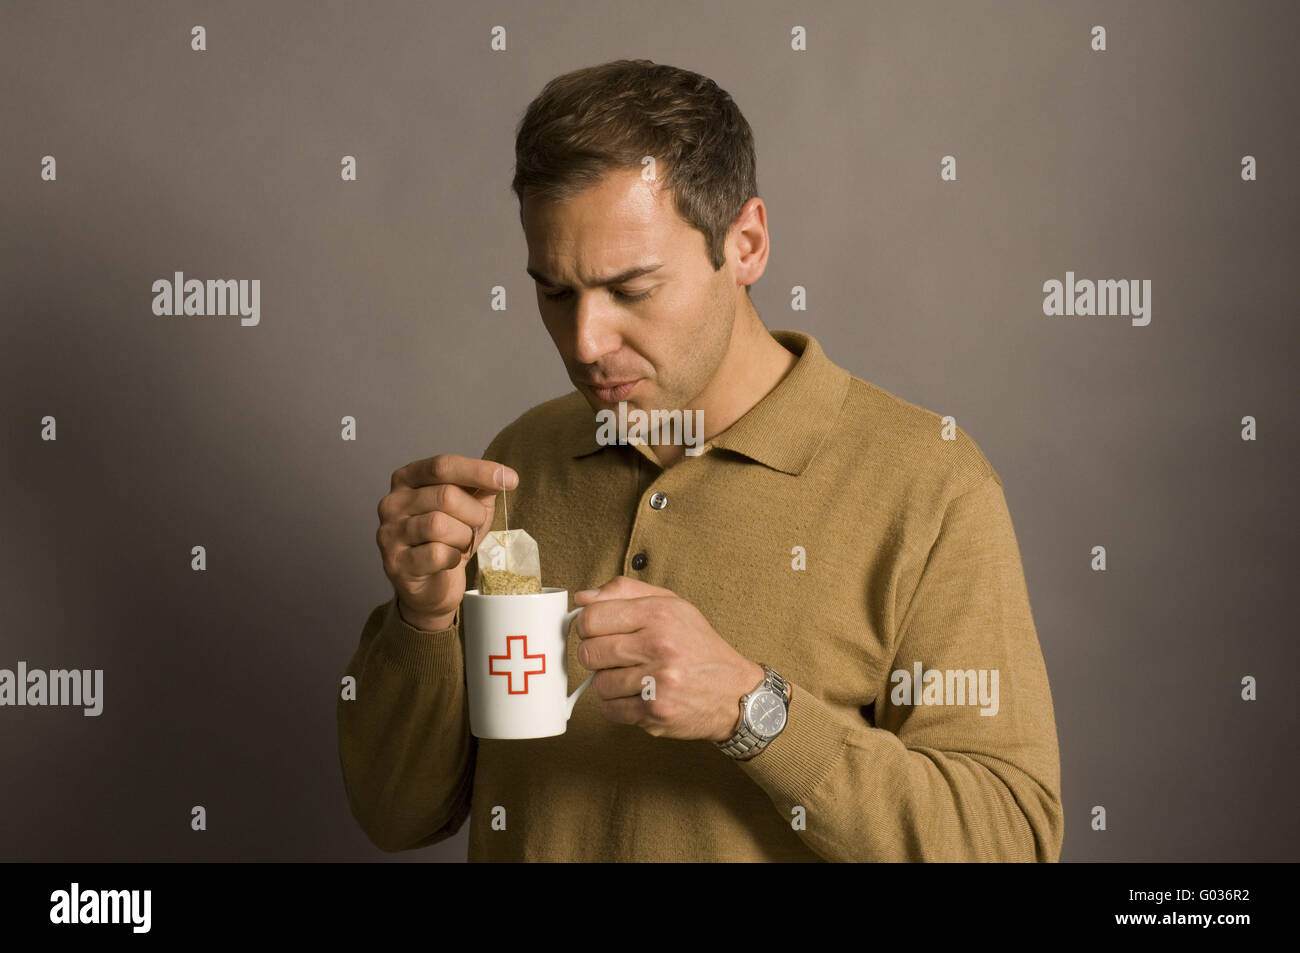 man drinking tea Stock Photo